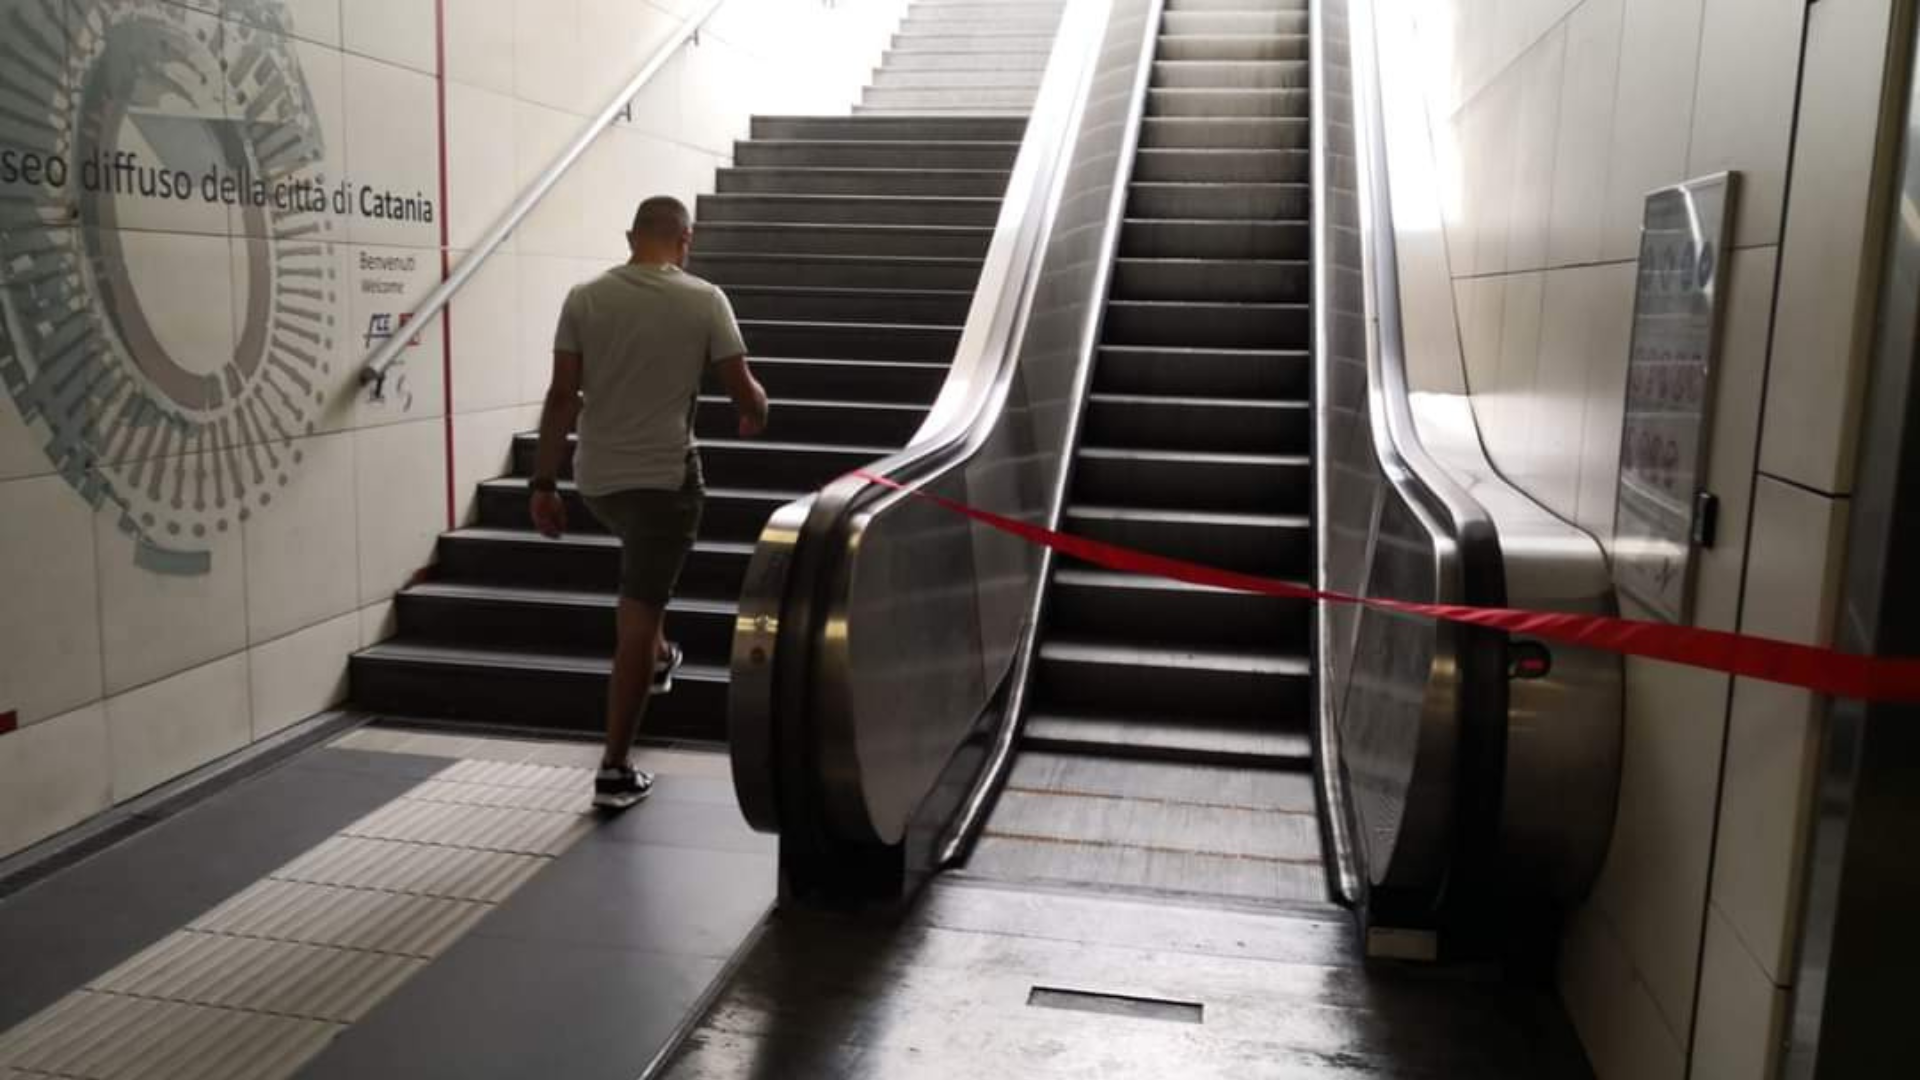 Metro: corse irregolari, scale mobili non funzionanti, ritardi e disservizi<br>Ciancio (M5s): «Basta contentini, i cittadini meritano servizi efficienti»